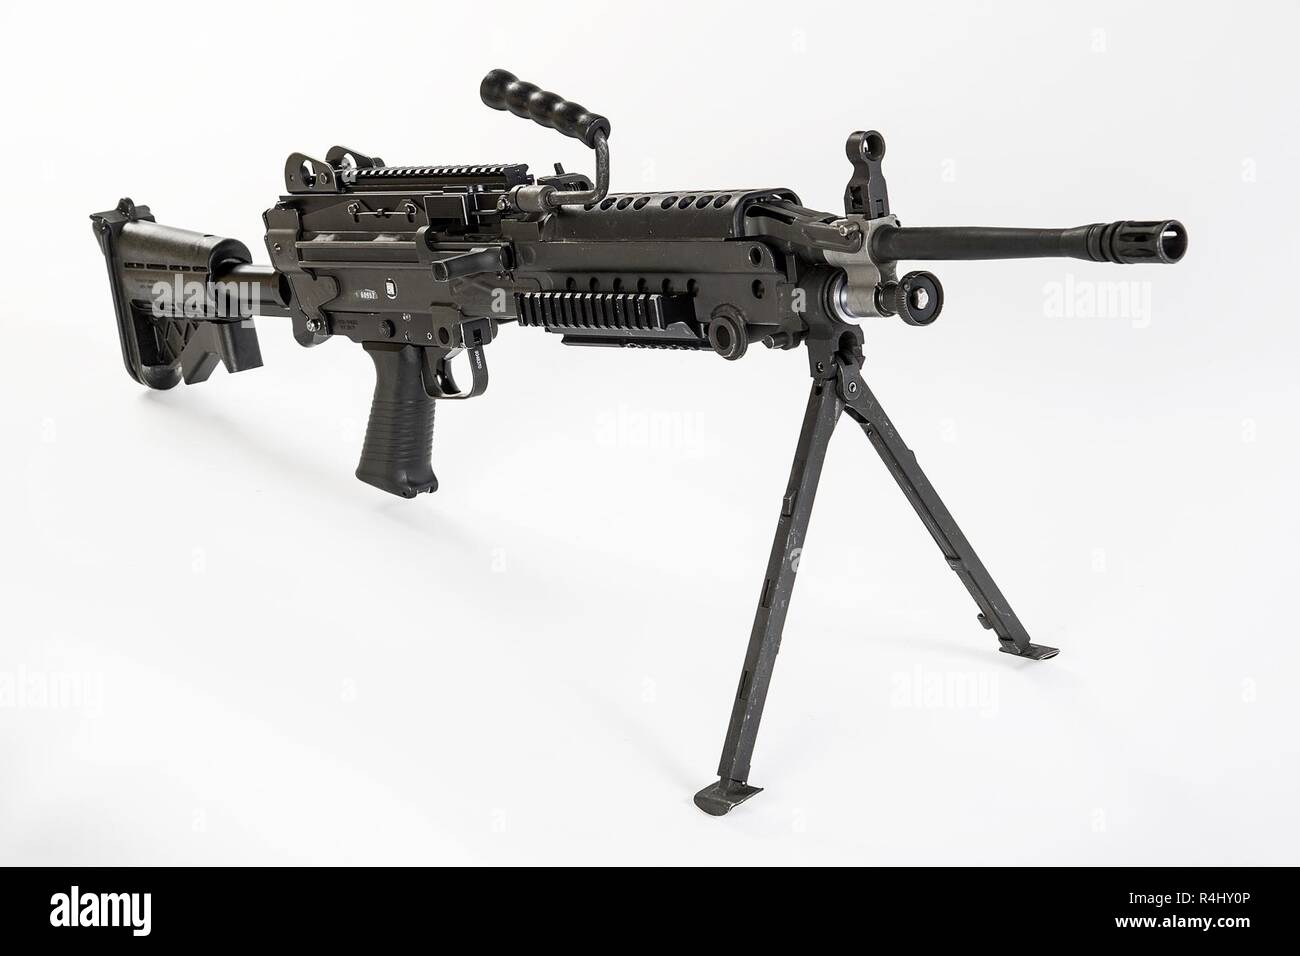 Die M249 Light Machine Gun, früher der M249 Squad Automatic Weapon (SAW)  und formell als Light Machine Gun, 5,56 mm, M249 Geschrieben bezeichnet,  ist die Amerikanische Adaption der belgischen FN Minimi, einem